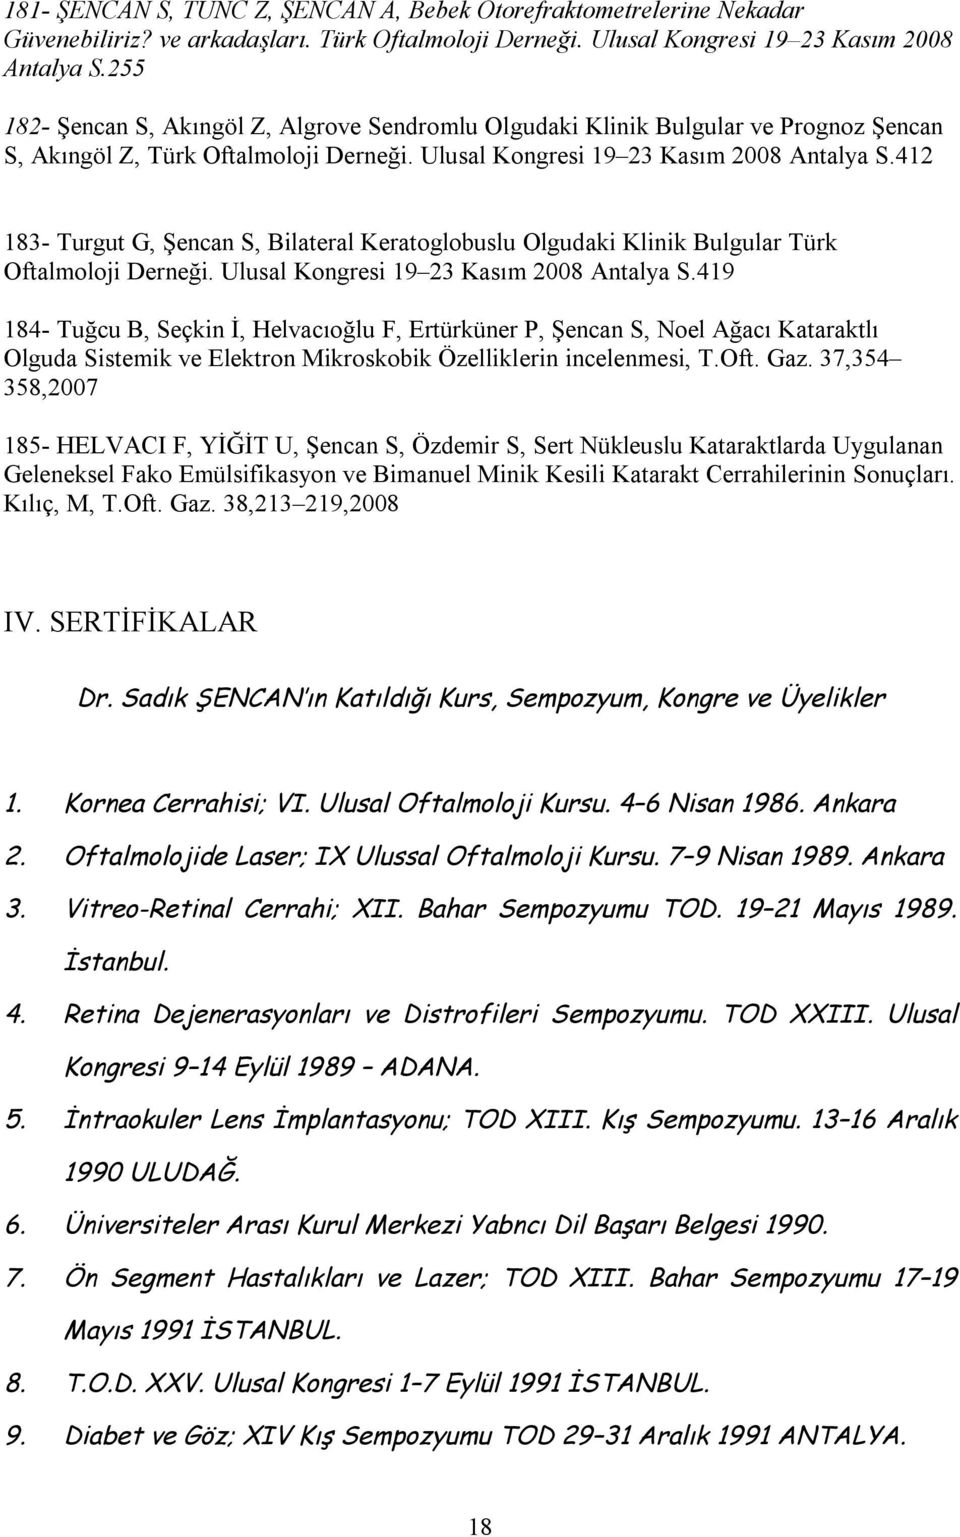 412 183- Turgut G, Şencan S, Bilateral Keratoglobuslu Olgudaki Klinik Bulgular Türk Oftalmoloji Derneği. Ulusal Kongresi 19 23 Kasım 2008 Antalya S.